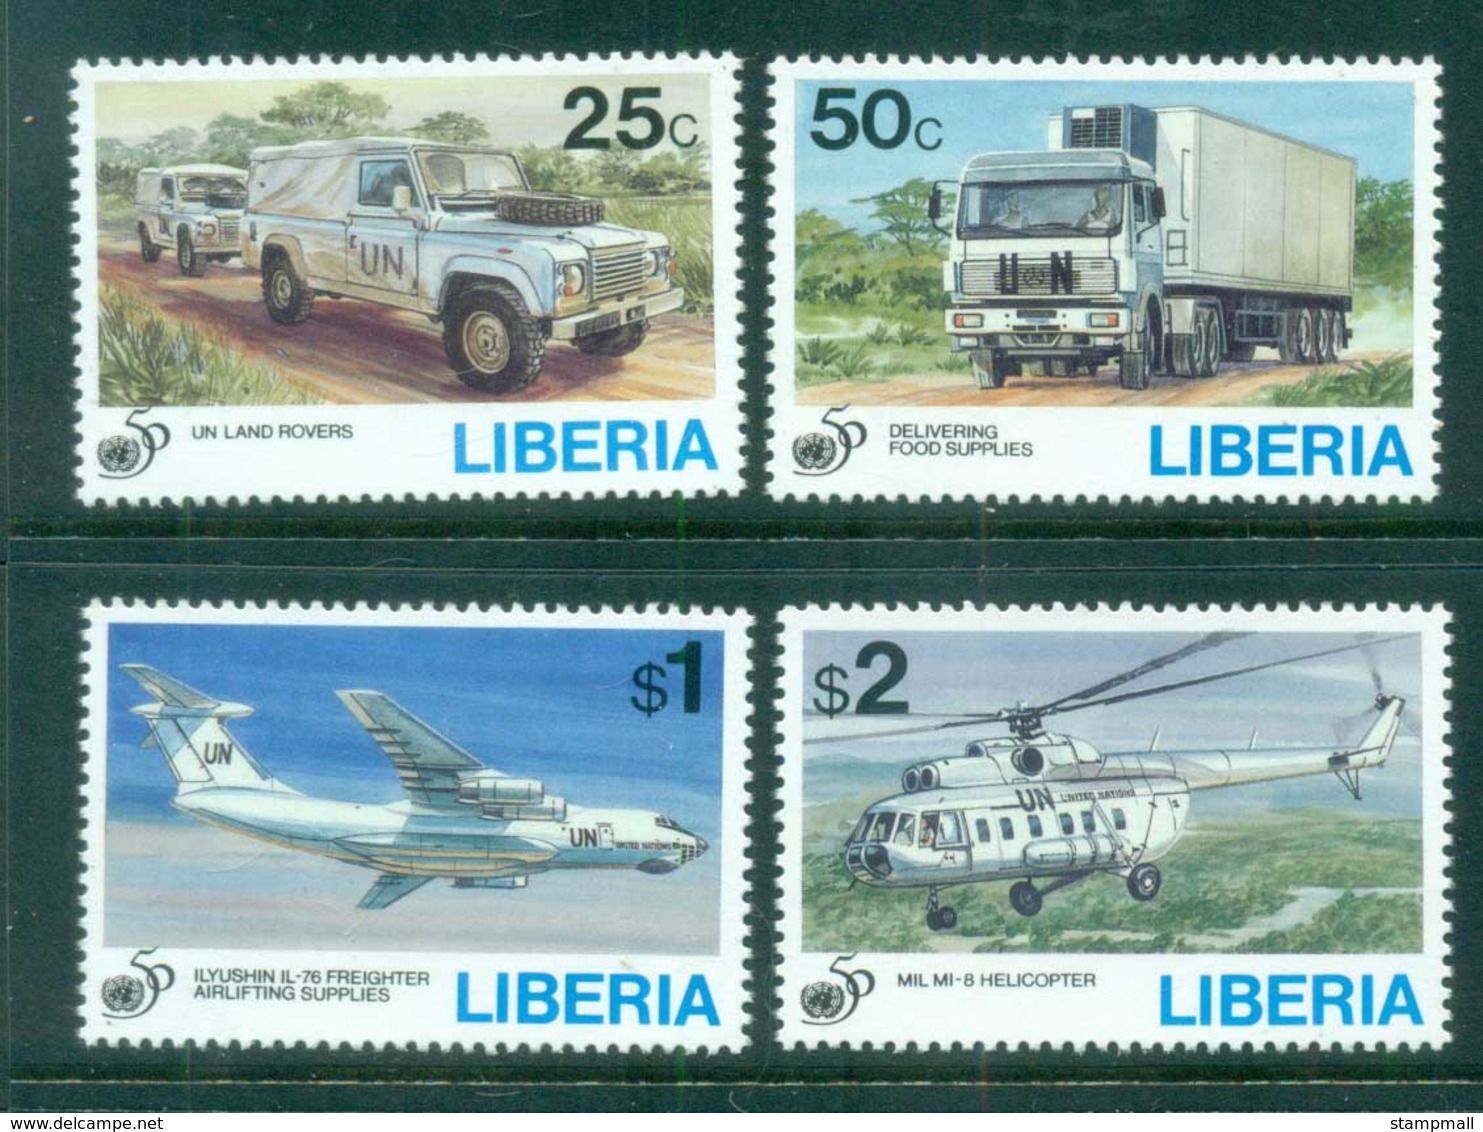 Liberia 1995 UN 50th Anniv. MUH - Liberia